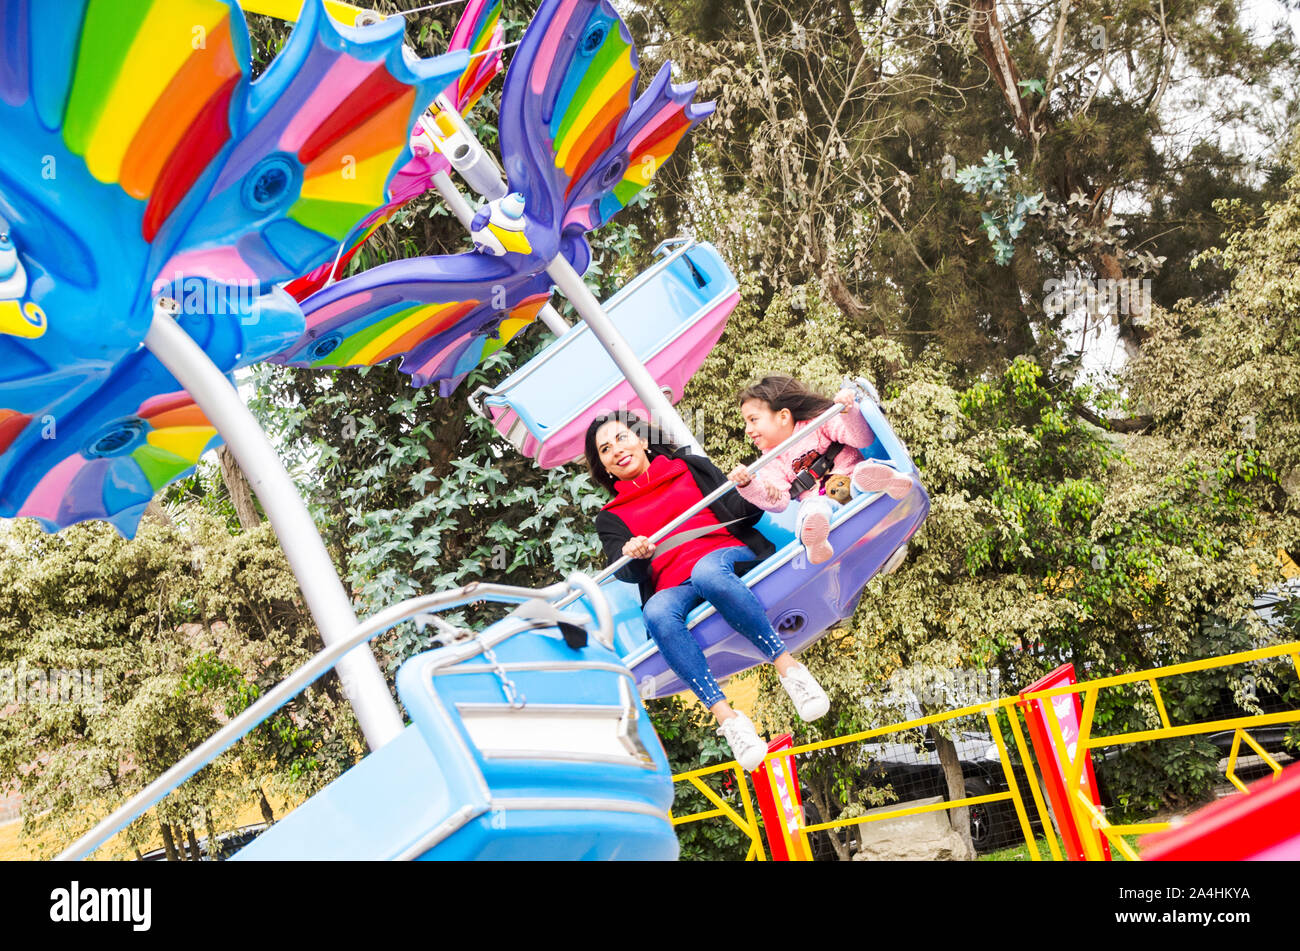 Mutter und Tochter Spaß und lächelnd in einem Freizeitpark Spiel Stockfoto